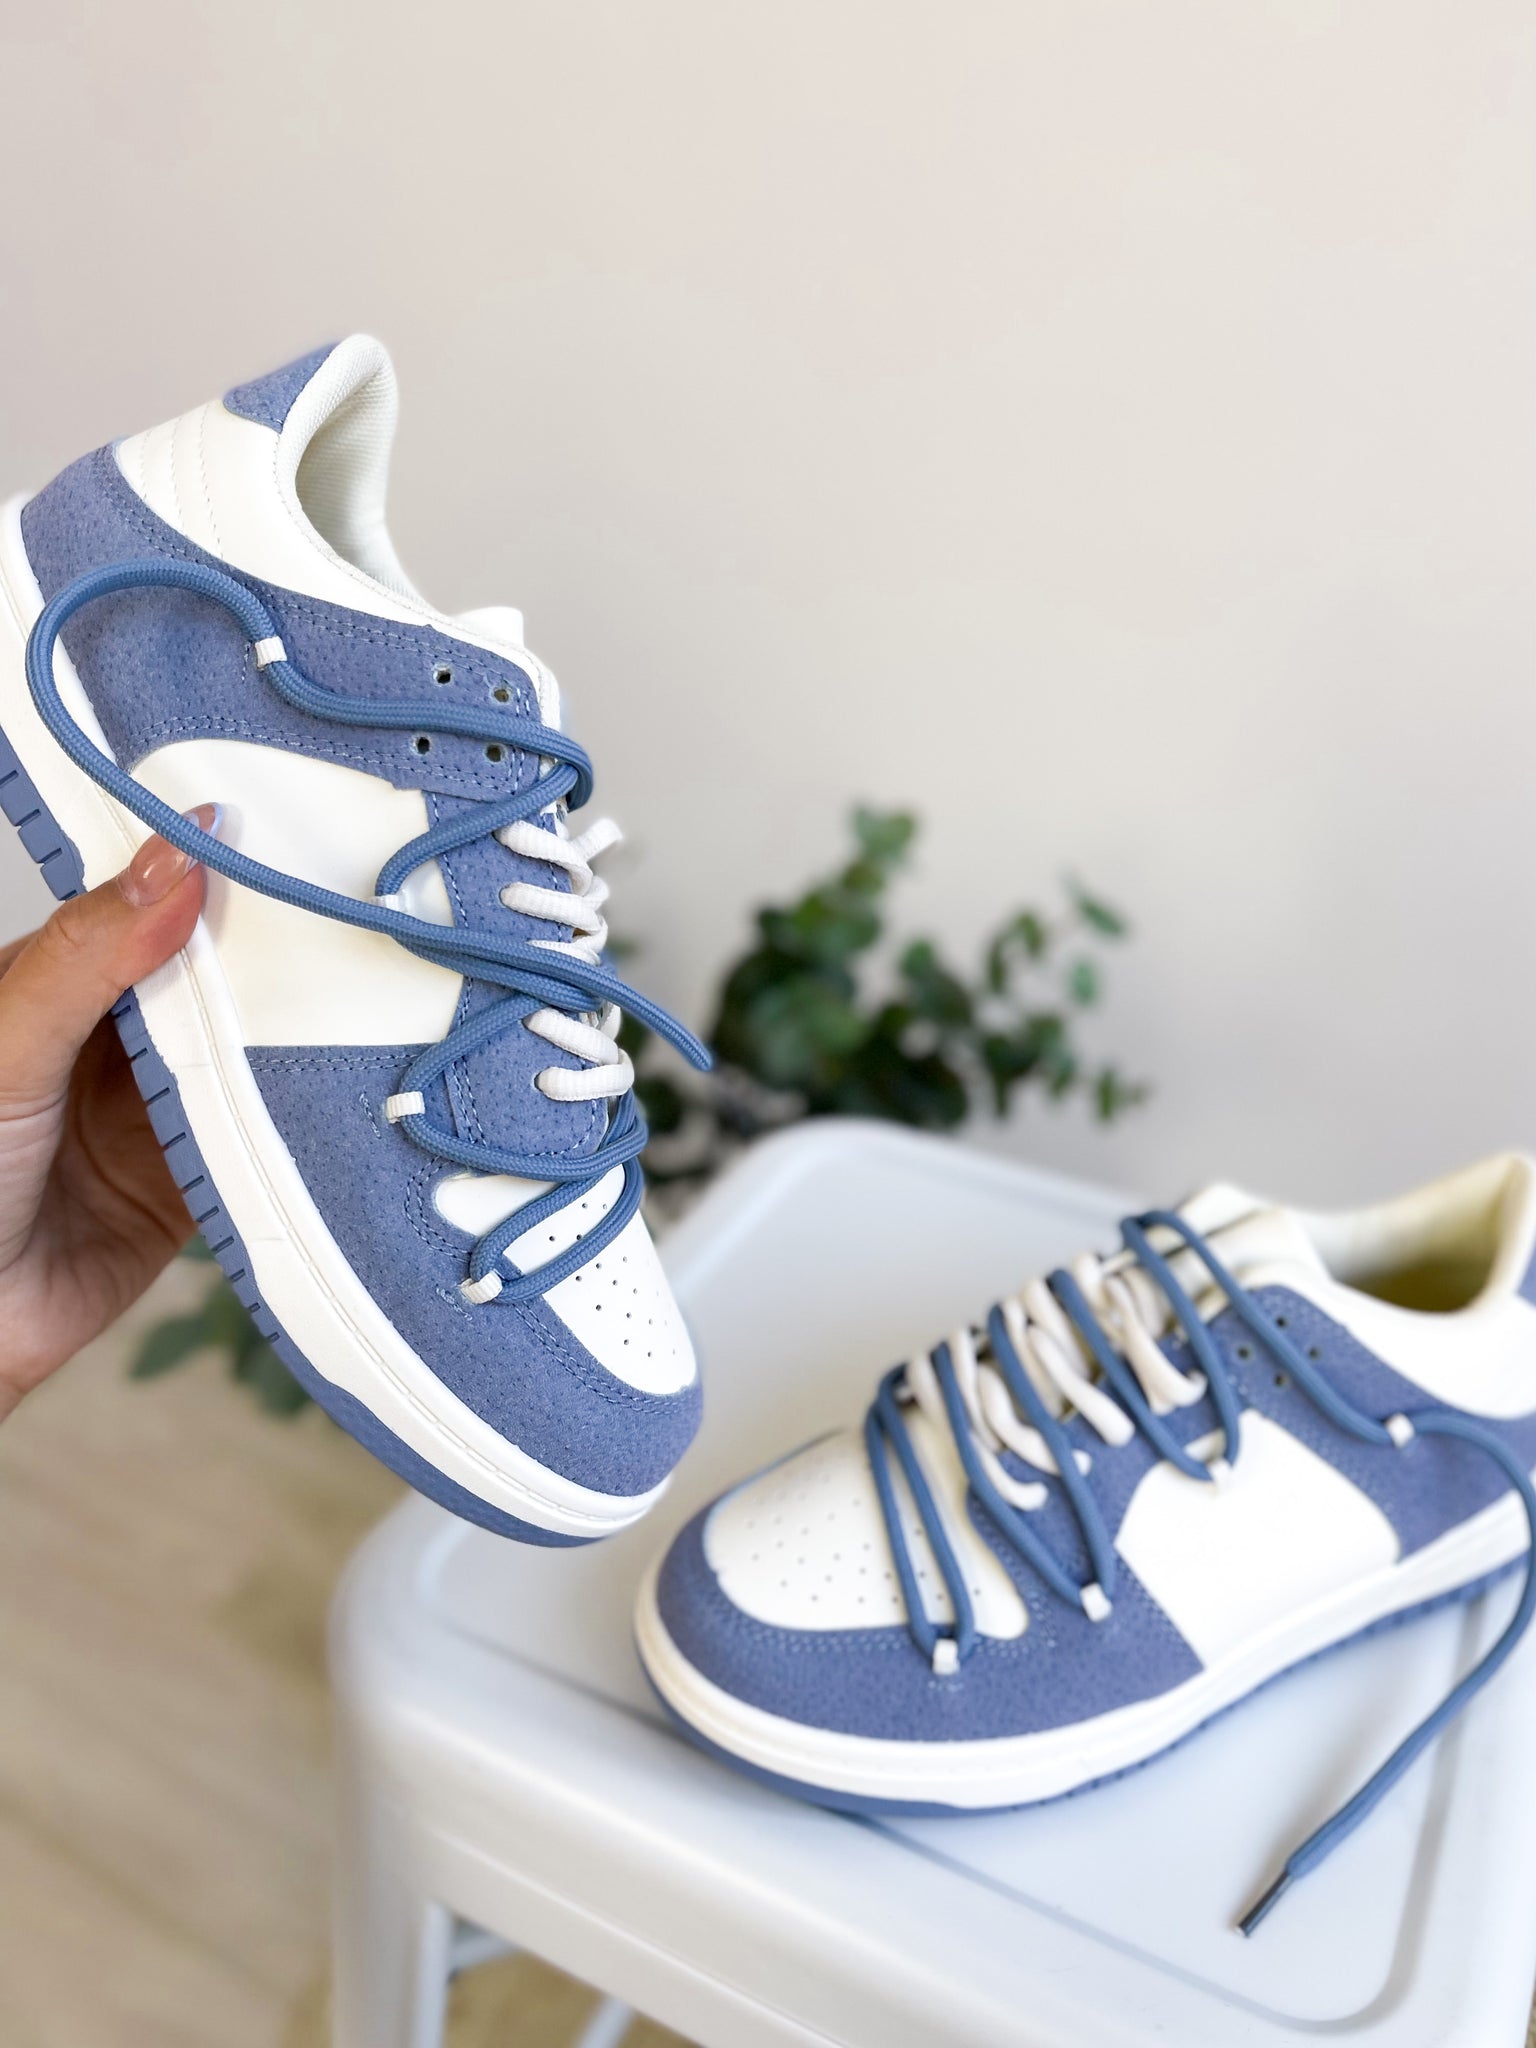 Like Sneakers - Blau Weiß (Nur Gr. 36)